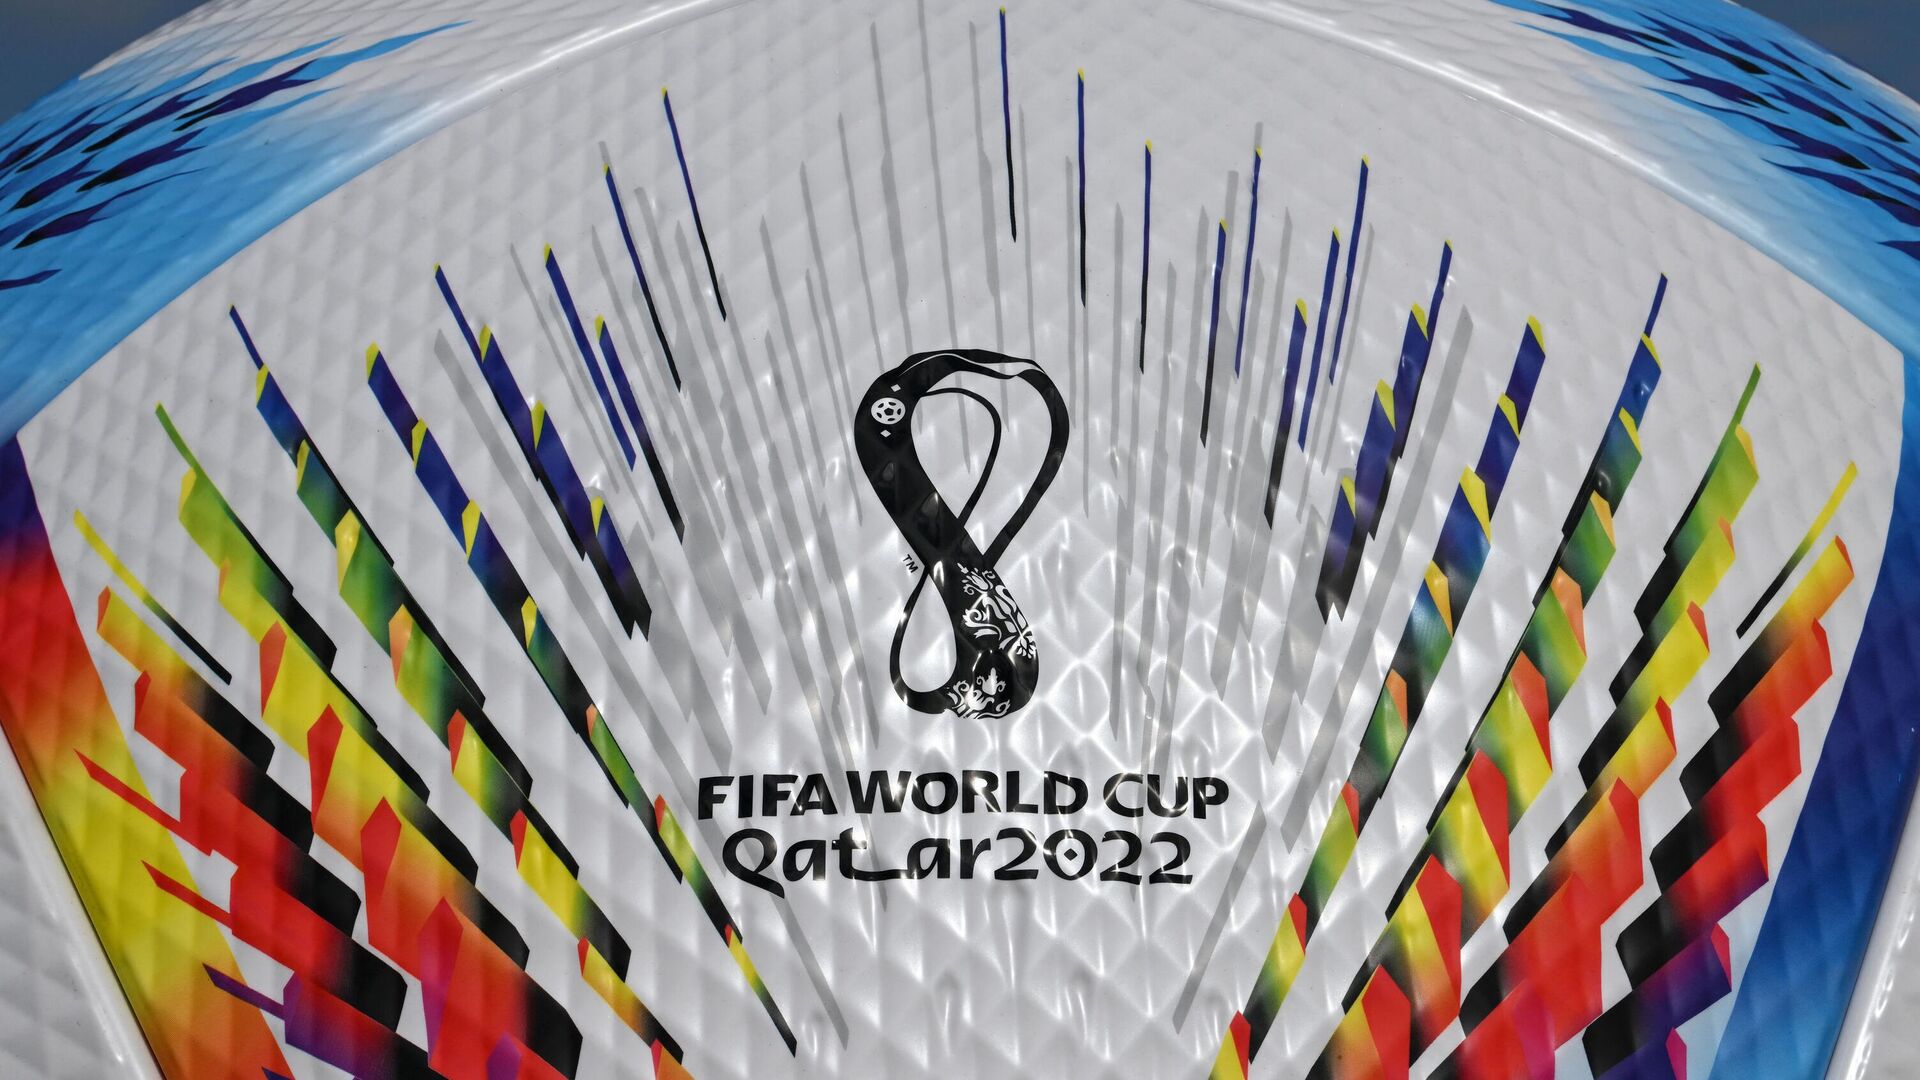 Футбольный мяч с логотипом ЧМ-2022 в Катаре - Sputnik Беларусь, 1920, 01.12.2022